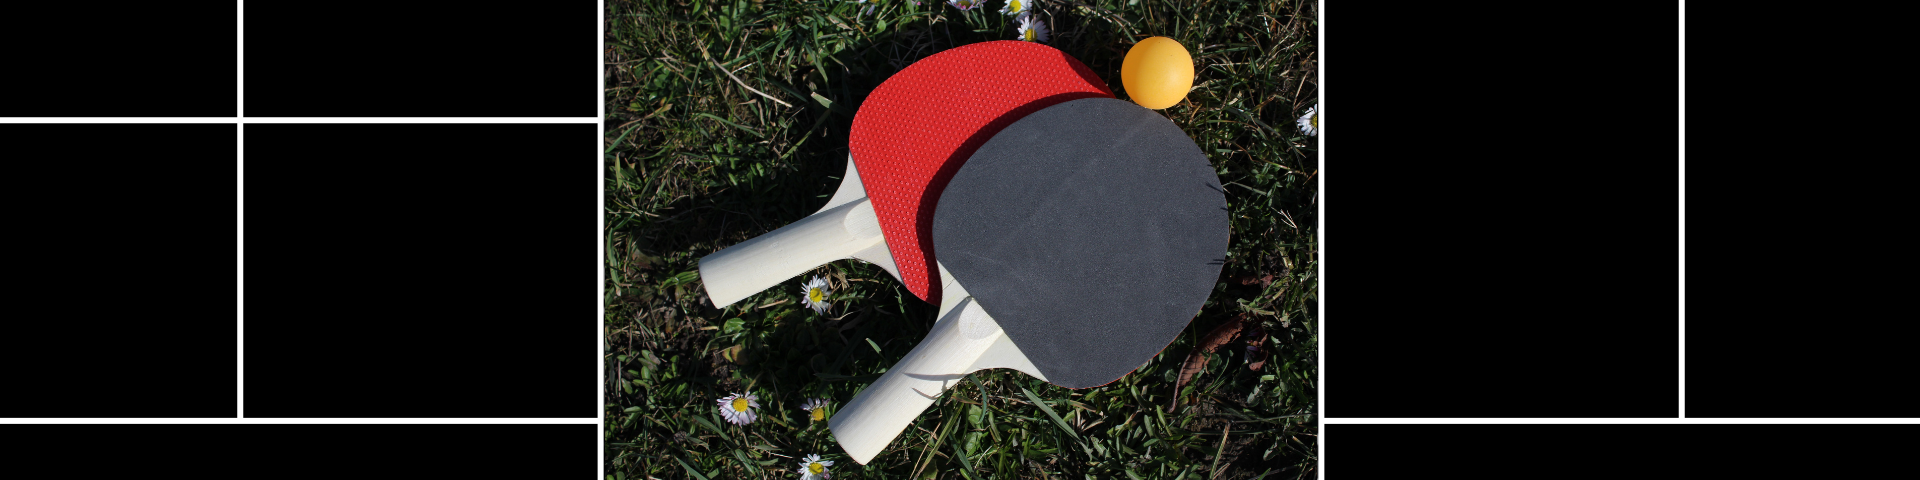 Εξοπλισμός Επιτραπέζιας Αντισφαίρισης (Ping-pong) - Εικόνα